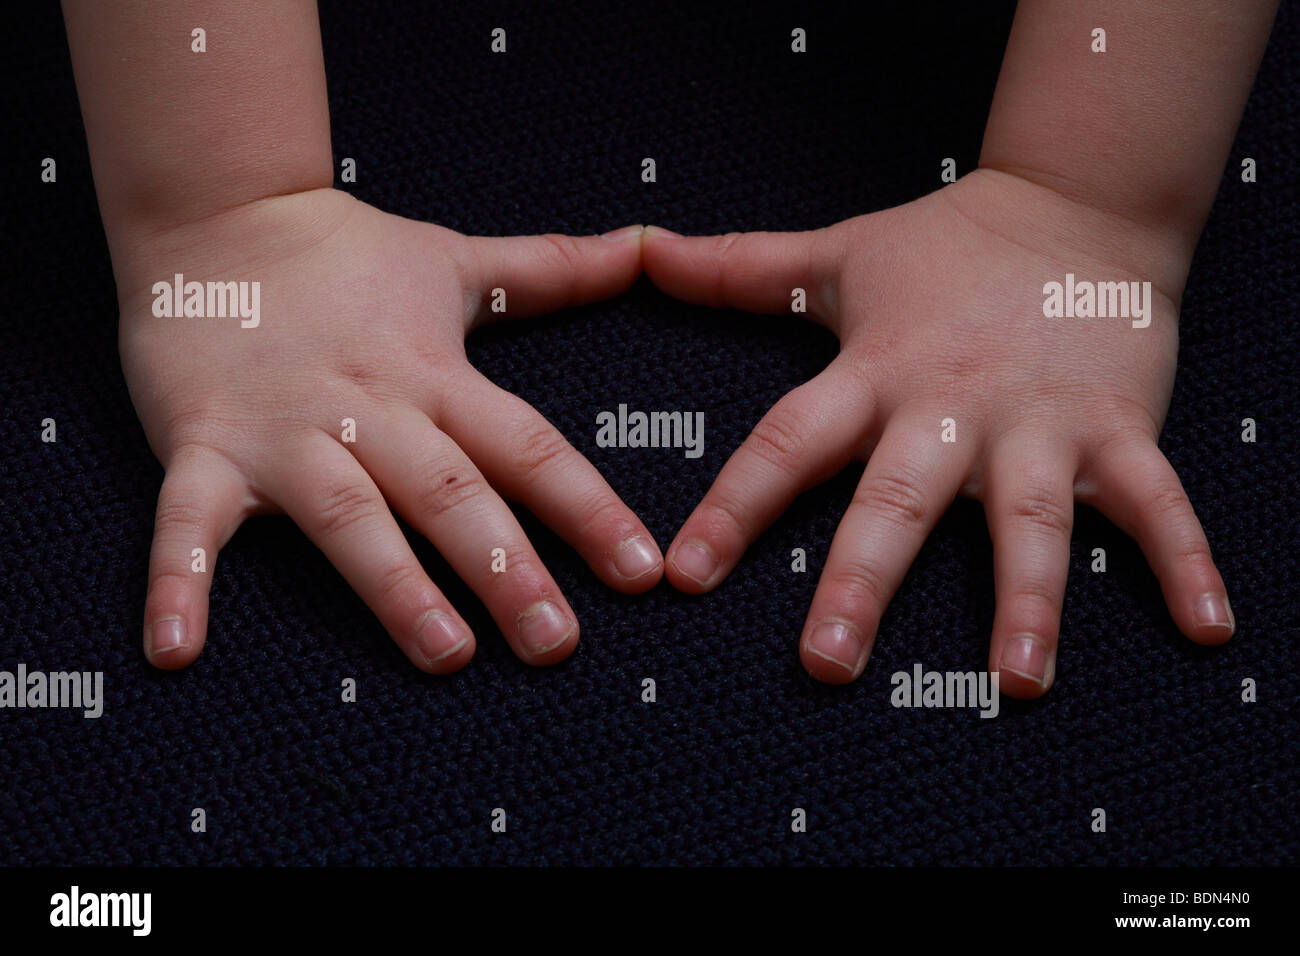 Hand Eines Überraschungsgast Hand eines Kindes 5 Finger 5 Finger deutsche Daumens Handfläche Hände Fingerkuppen Fingerspitze Fingernägel Fingersp Stockfoto